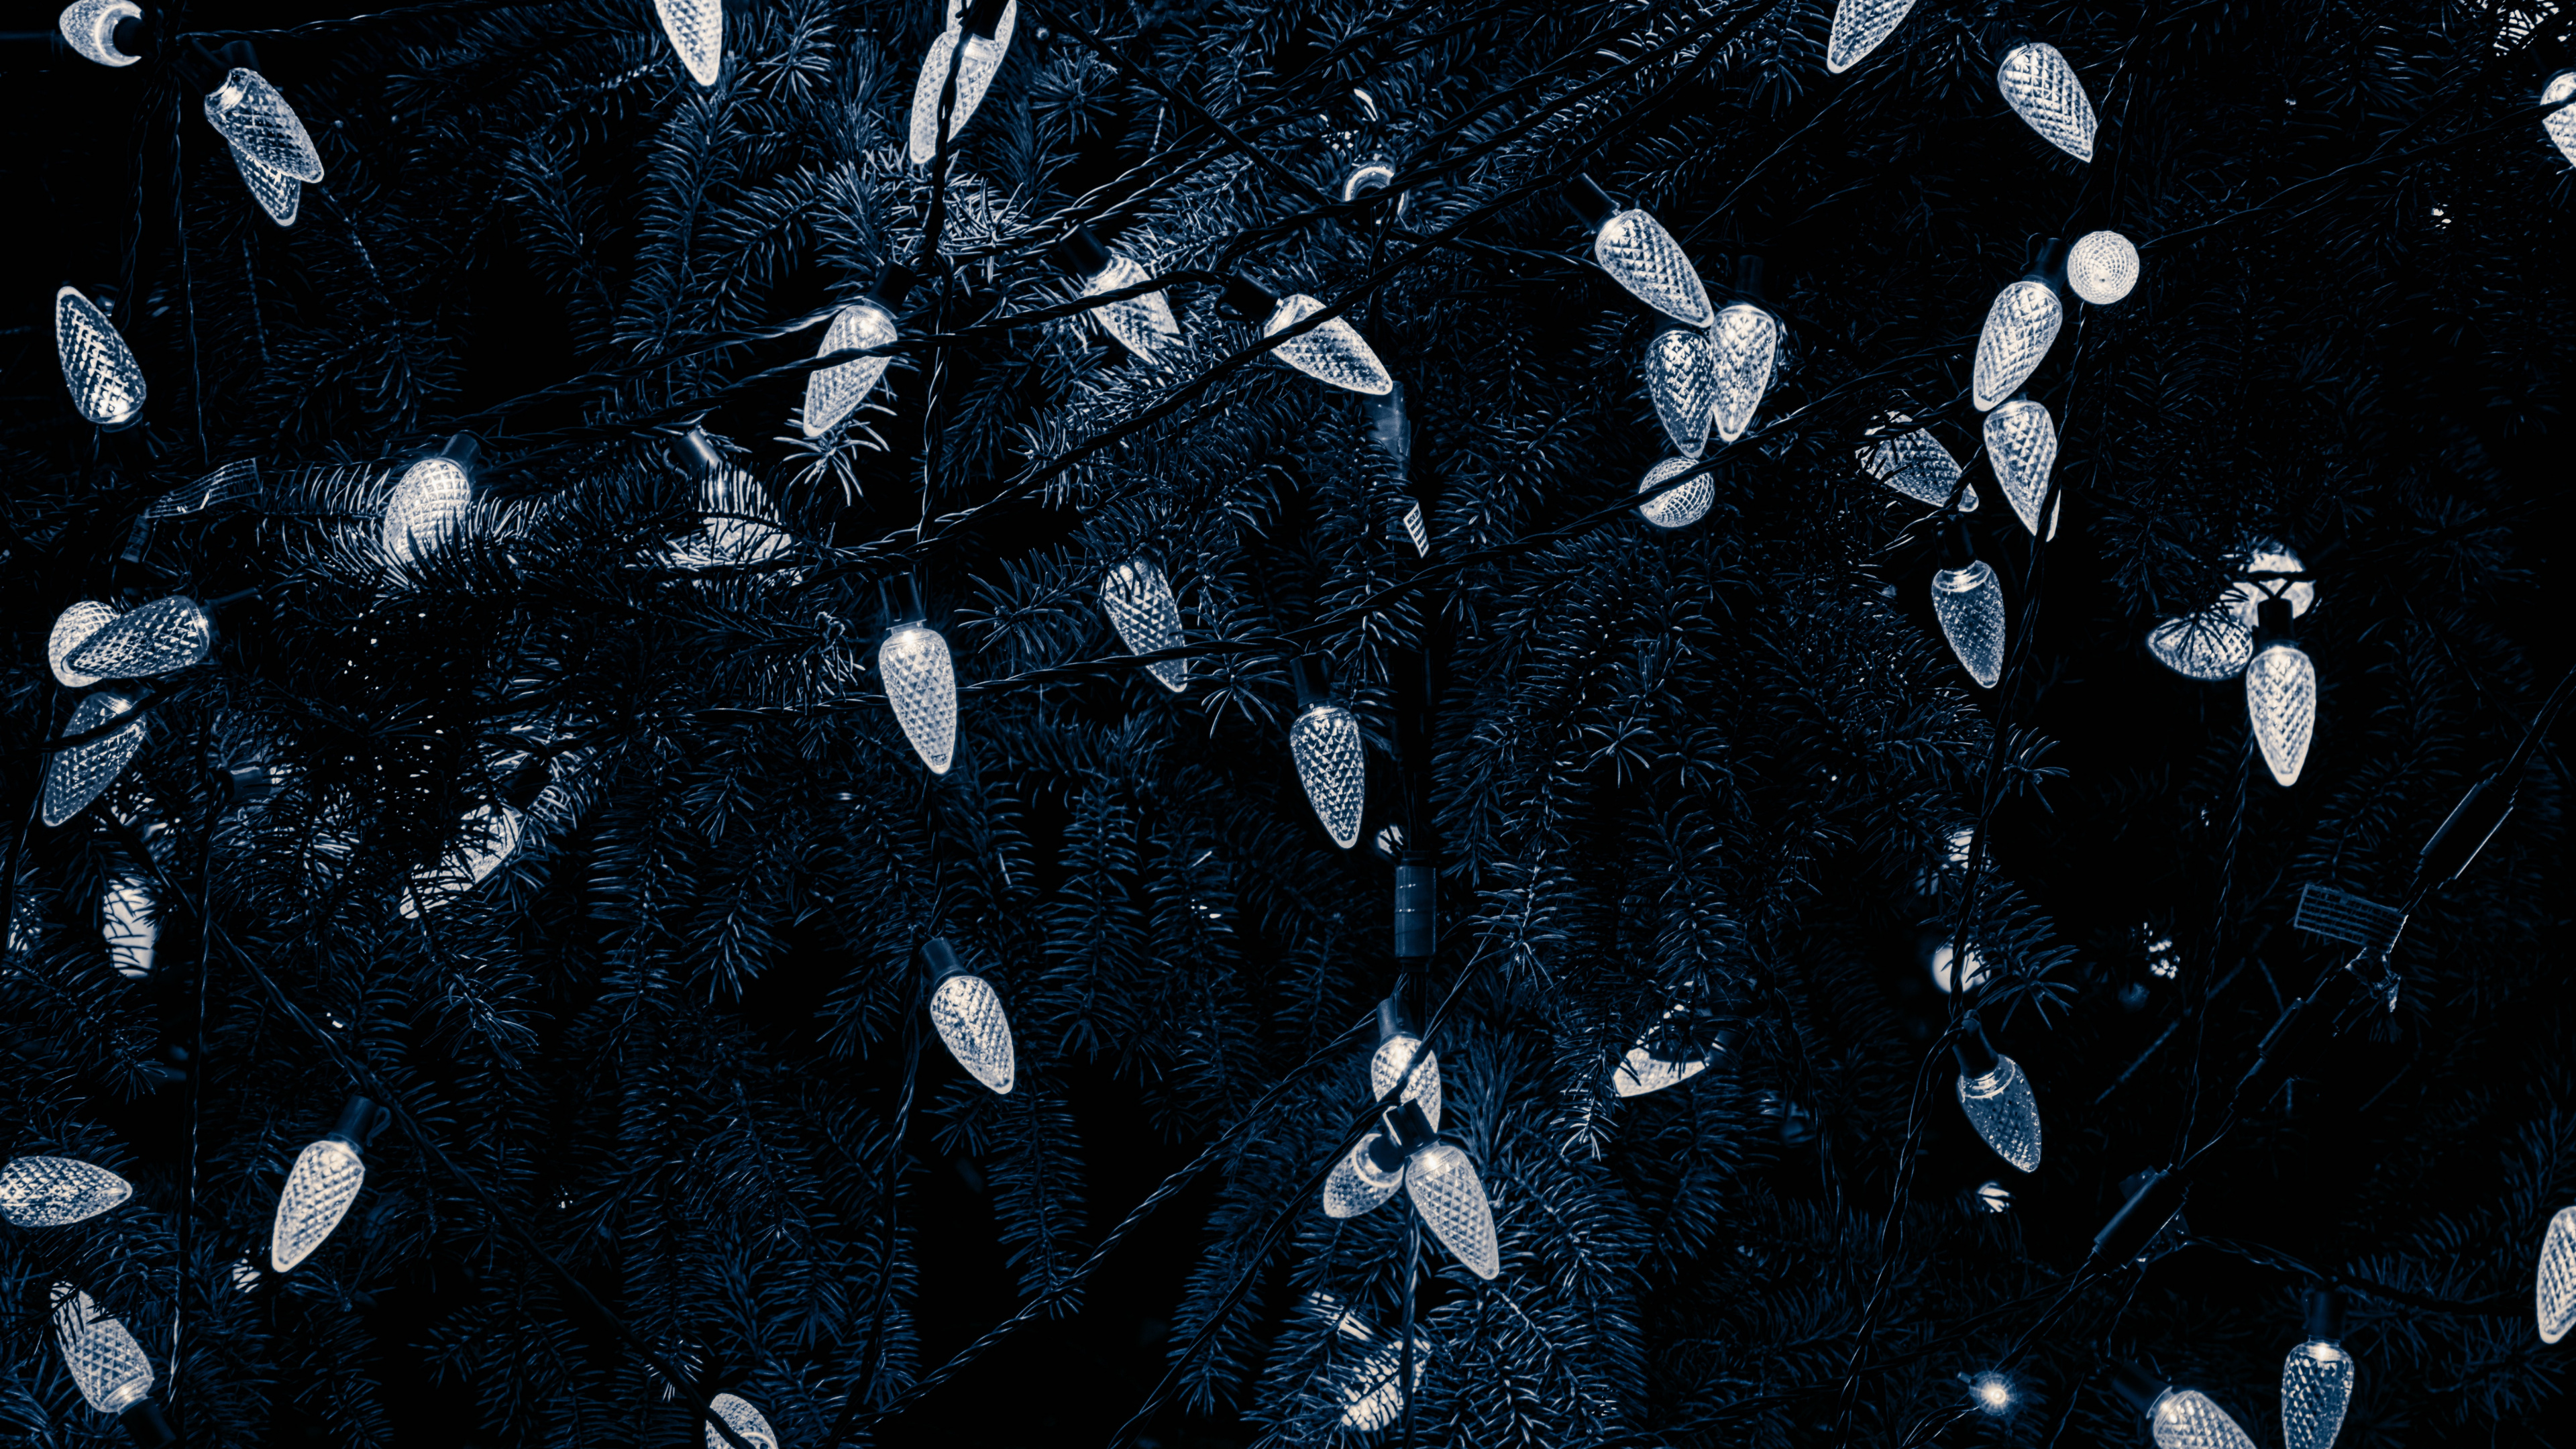 Negro, Agua, Patrón, en Blanco y Negro, Diseño. Wallpaper in 3840x2160 Resolution